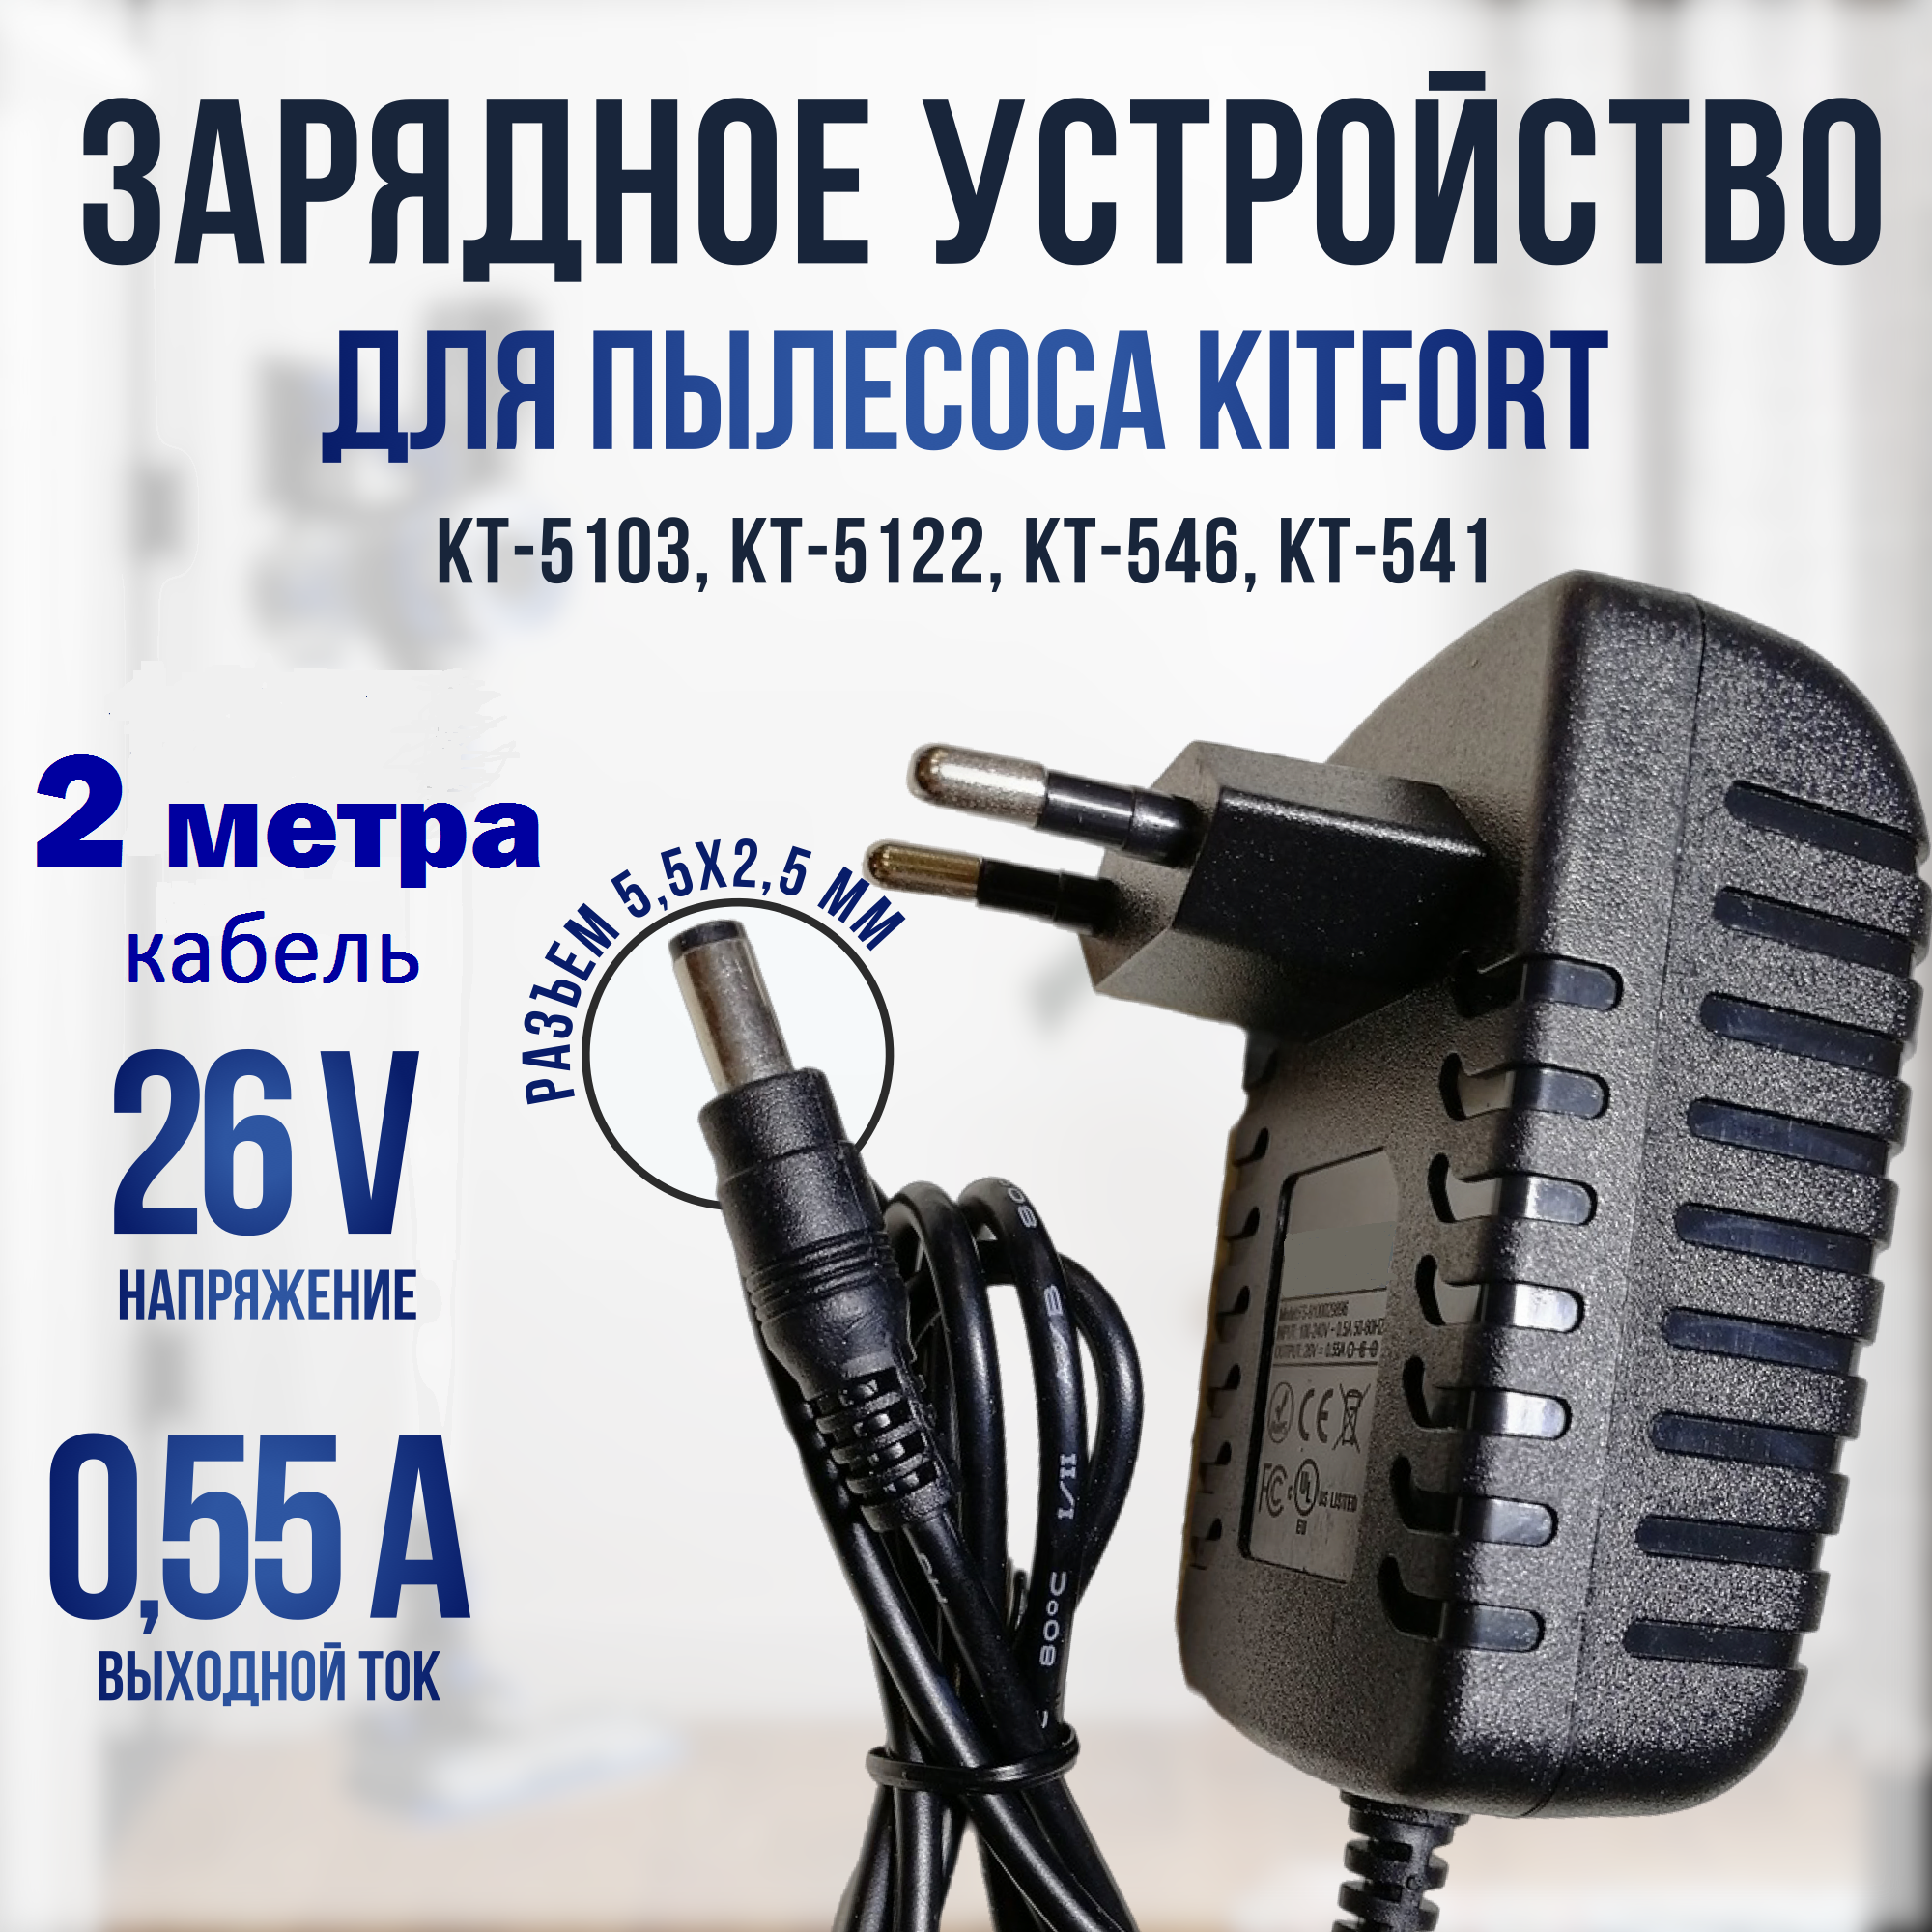 Зарядное устройство для пылесоса Kitfort KT-541/546/5103/5122 26v 0.55a